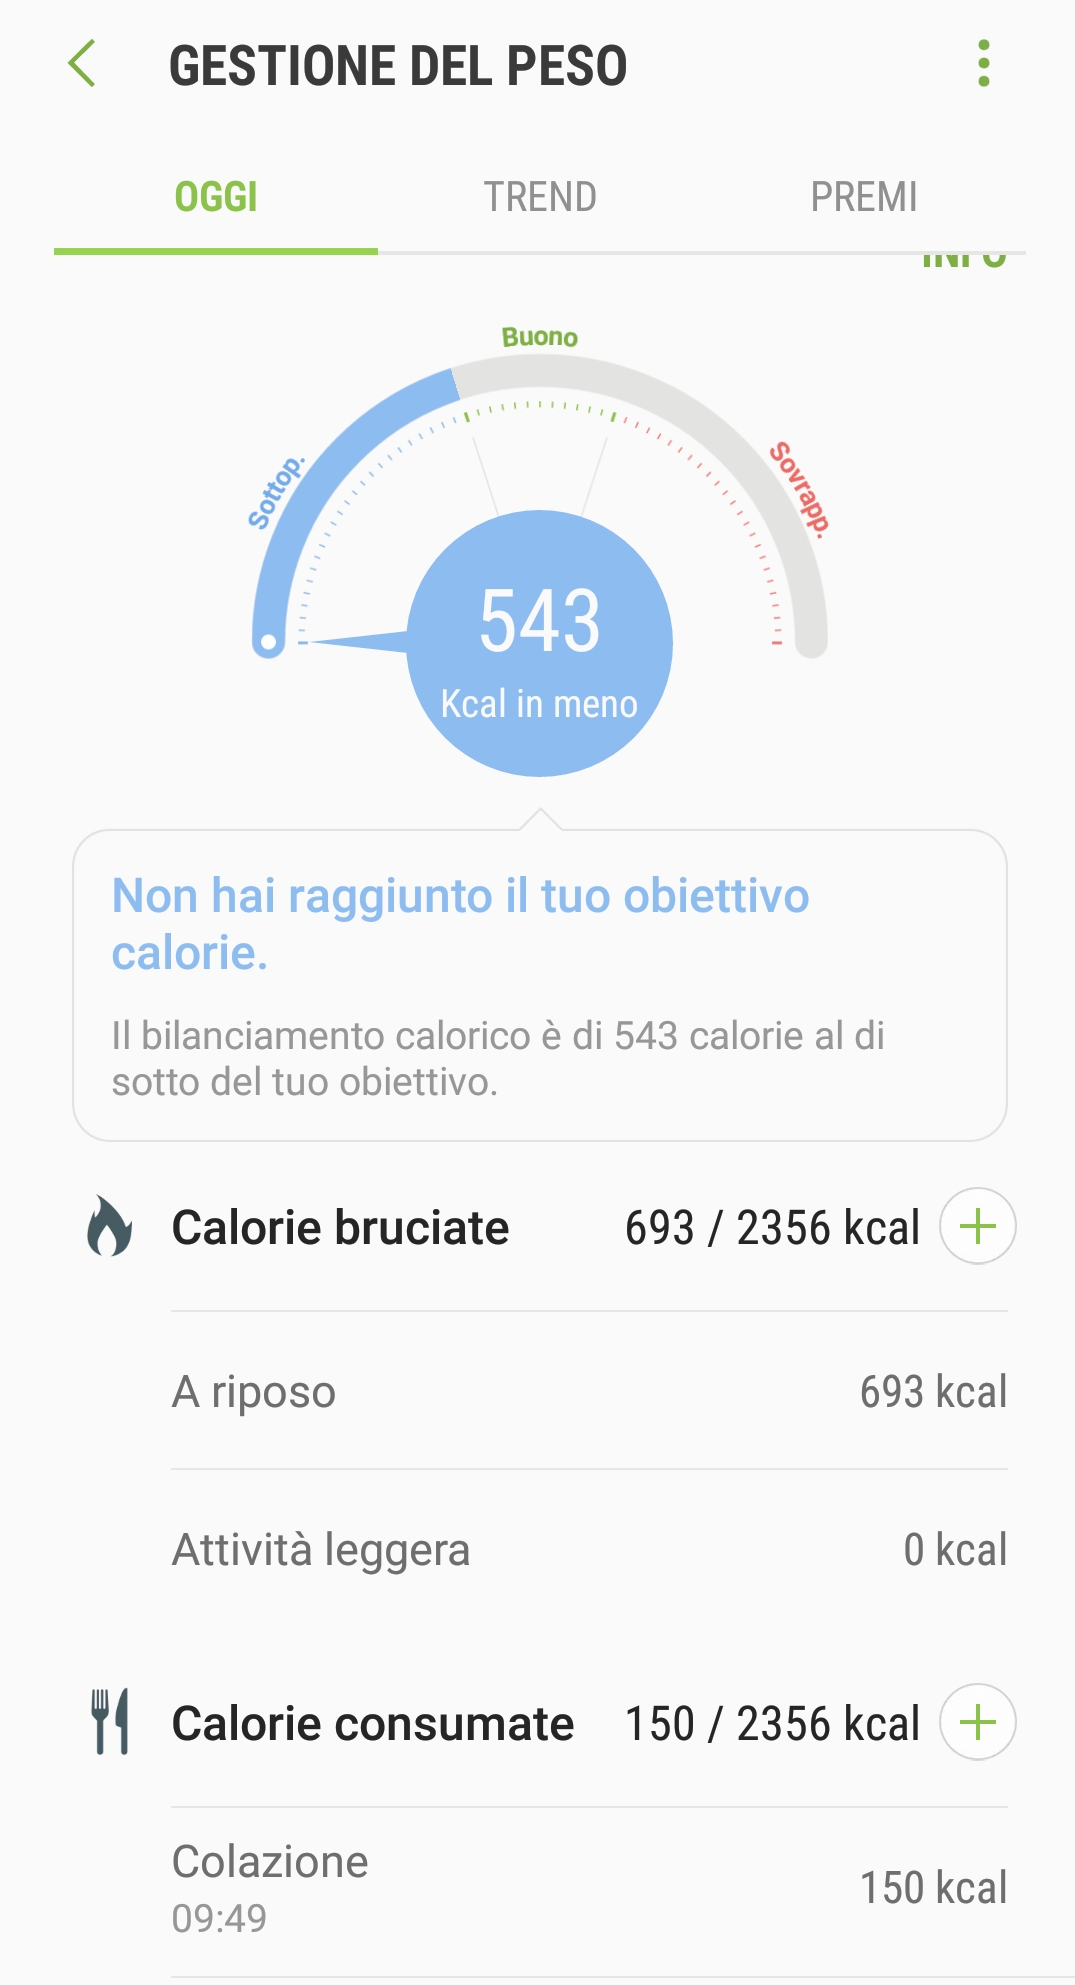 Shealth Calorie Bruciate con allenamento - Samsung Community